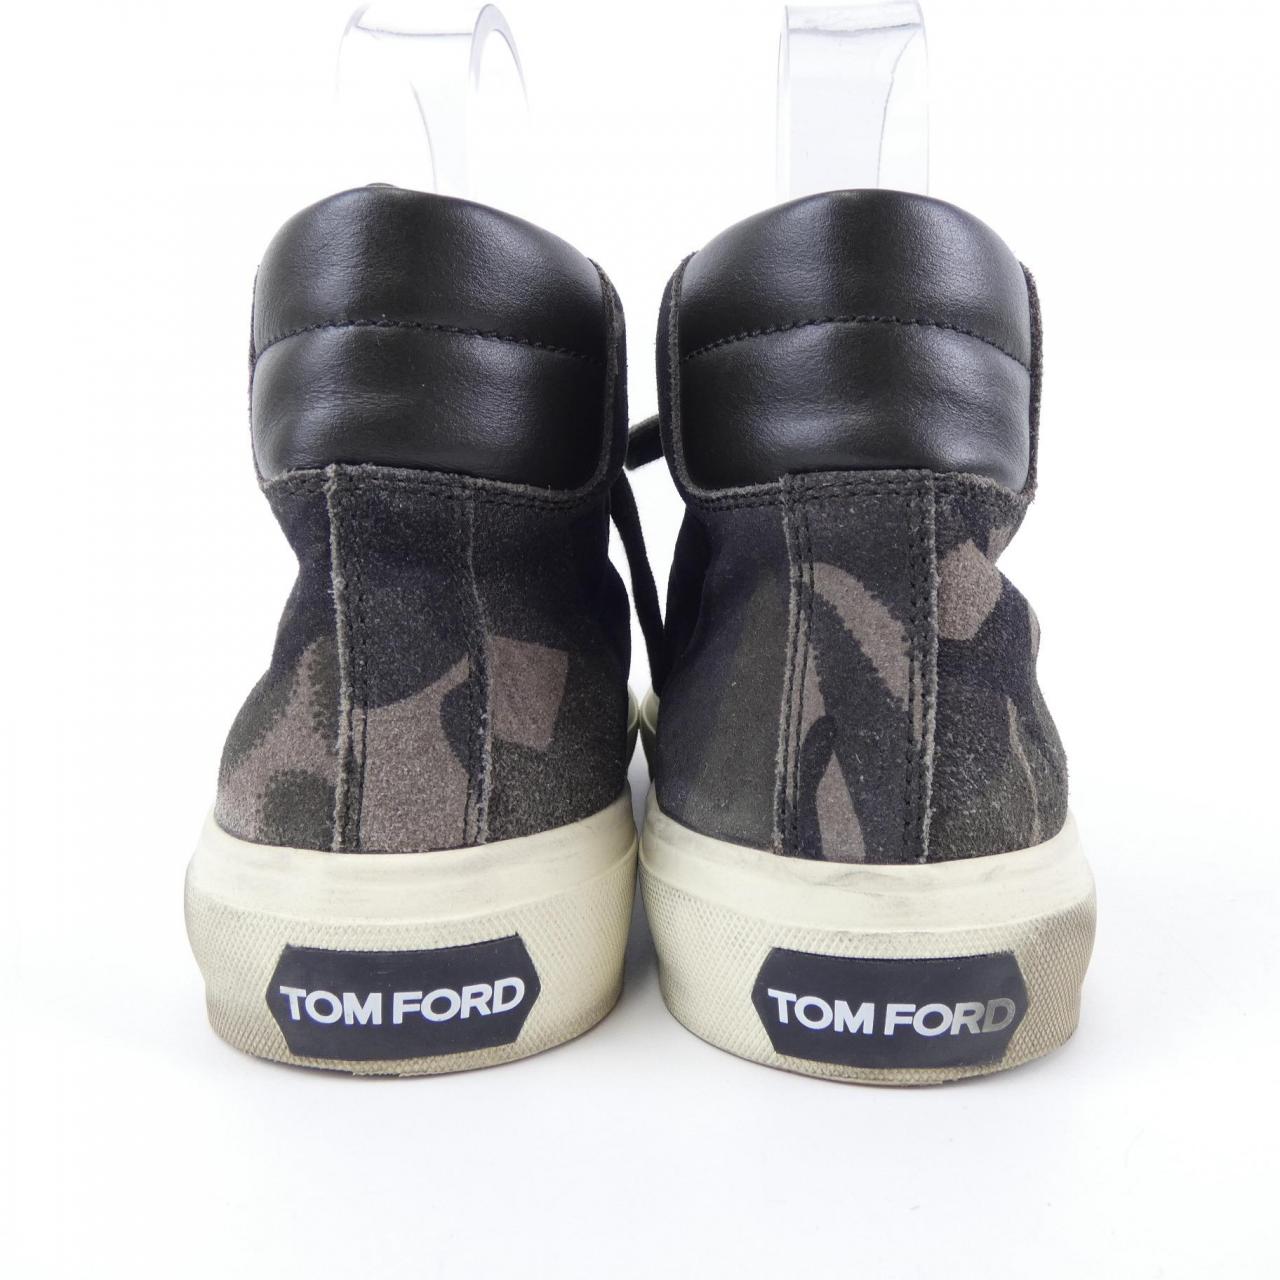 TOM FORD TOM FORD 低帮运动鞋